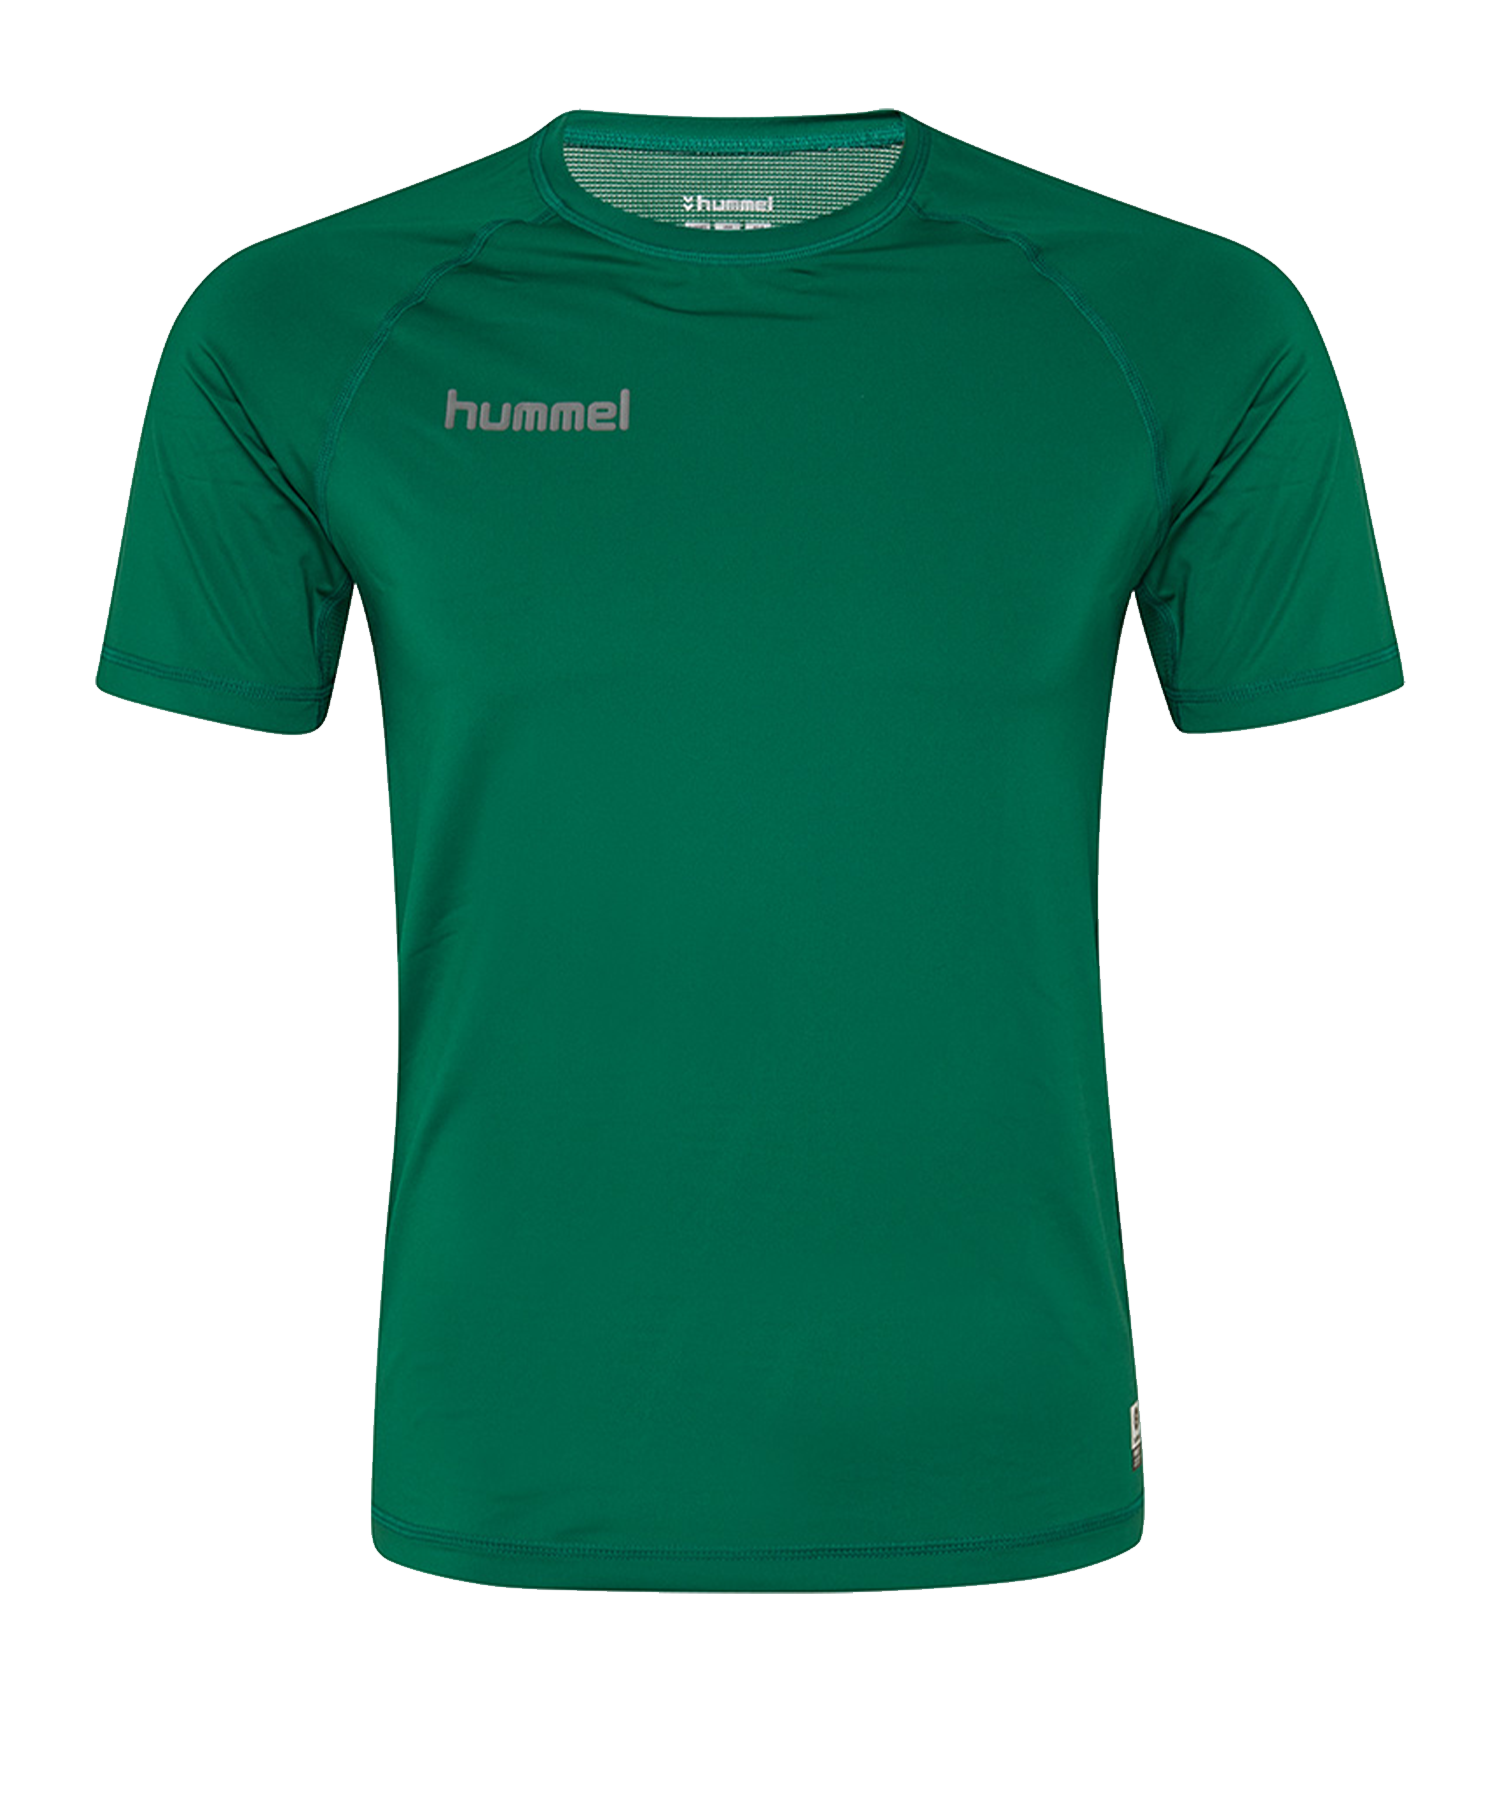 Tee-shirt Hummel FIRST PERFORMANCE JERSEY S/S